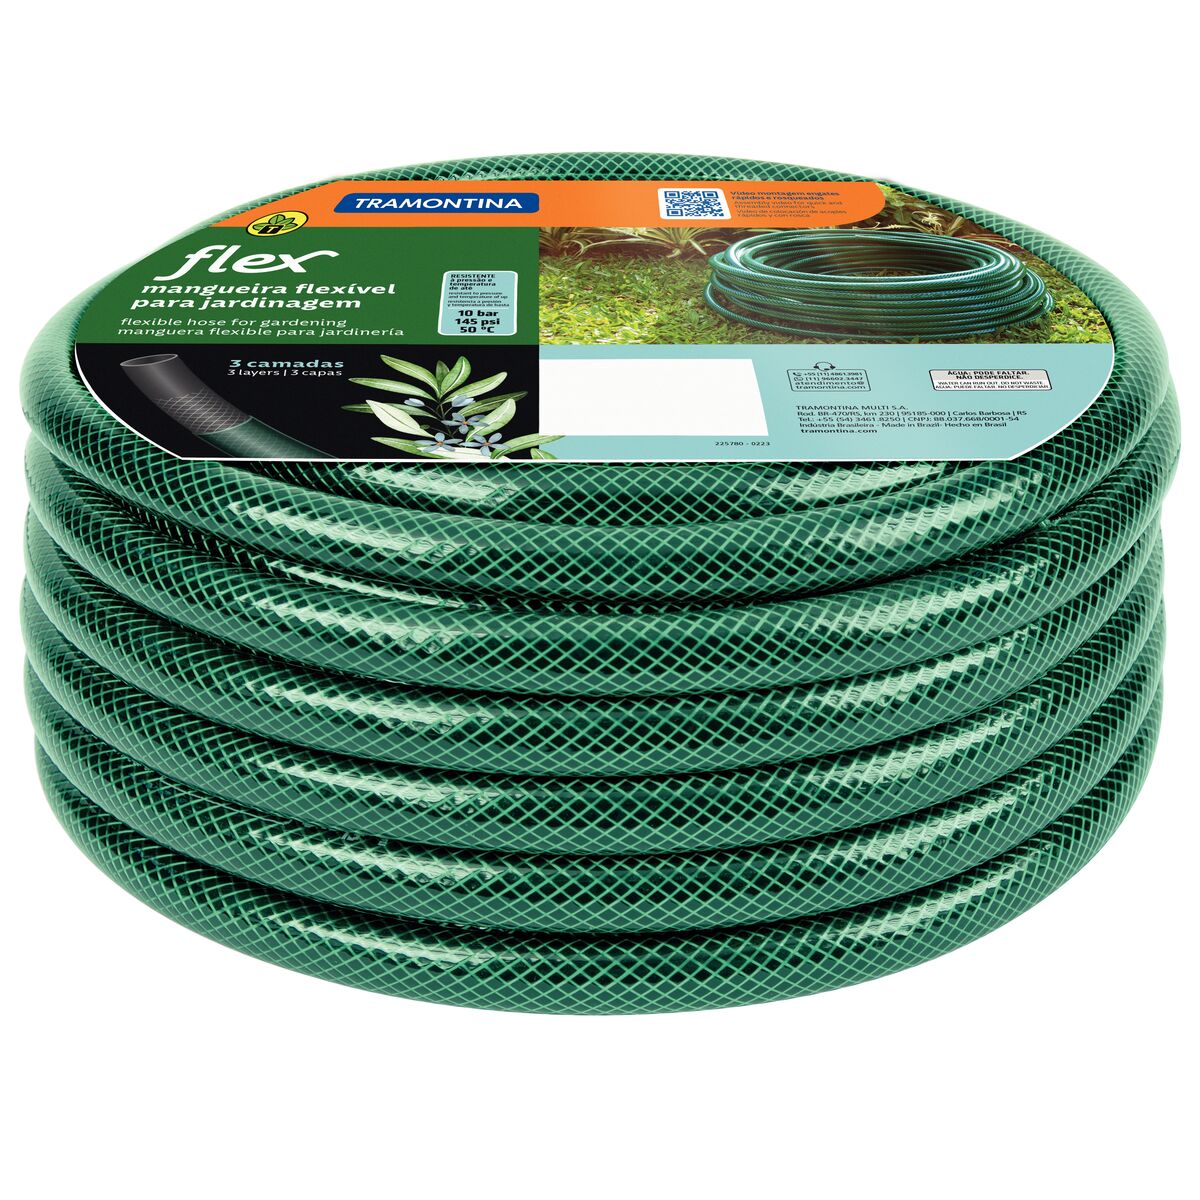 Flex garden hose, 10 m